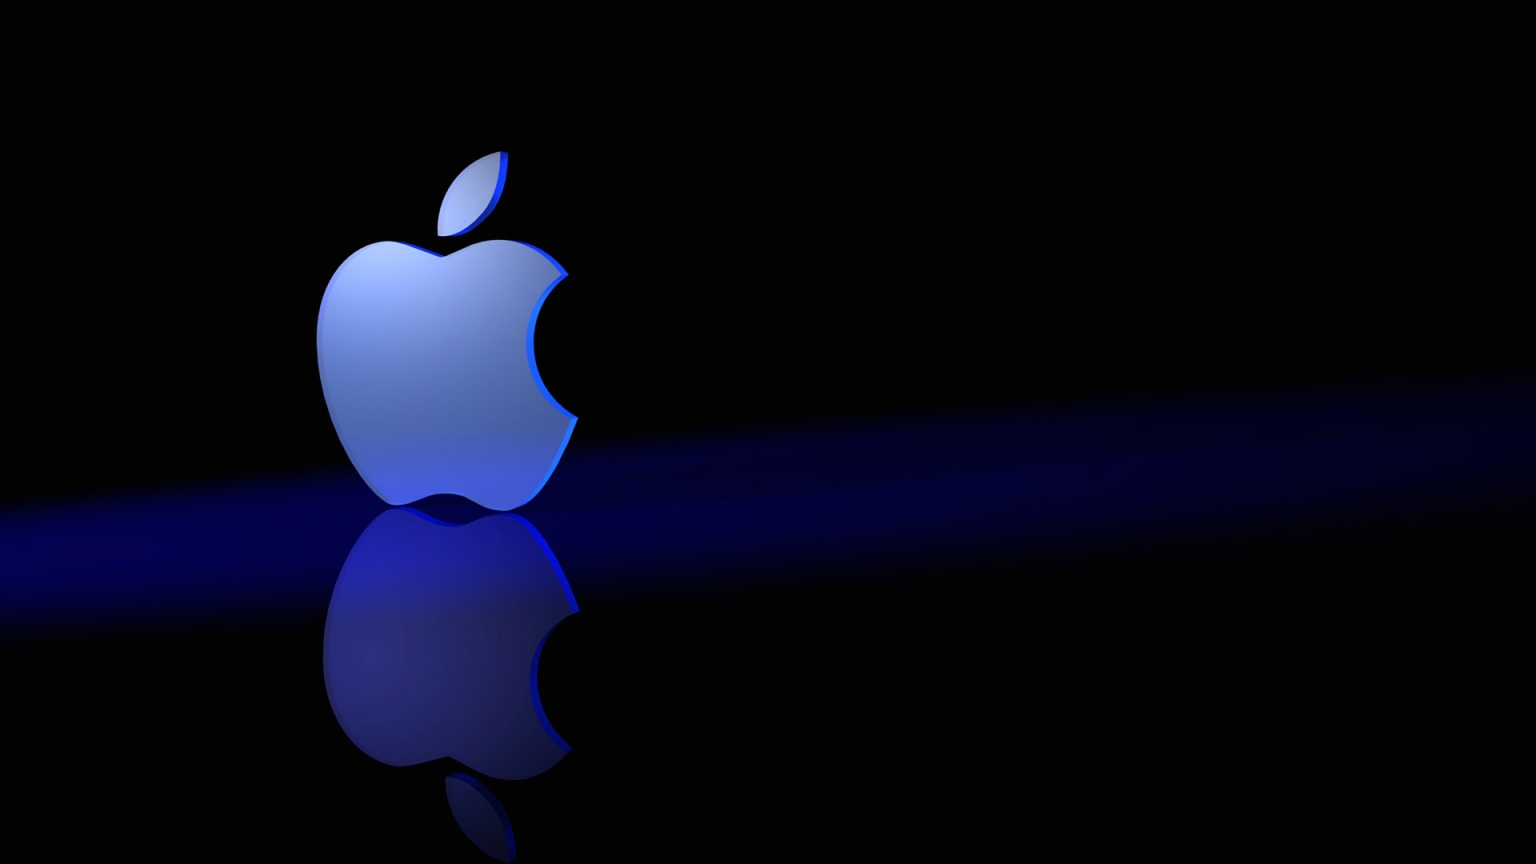 Blue Gradient Apple Logo for 1536 x 864 HDTV resolution